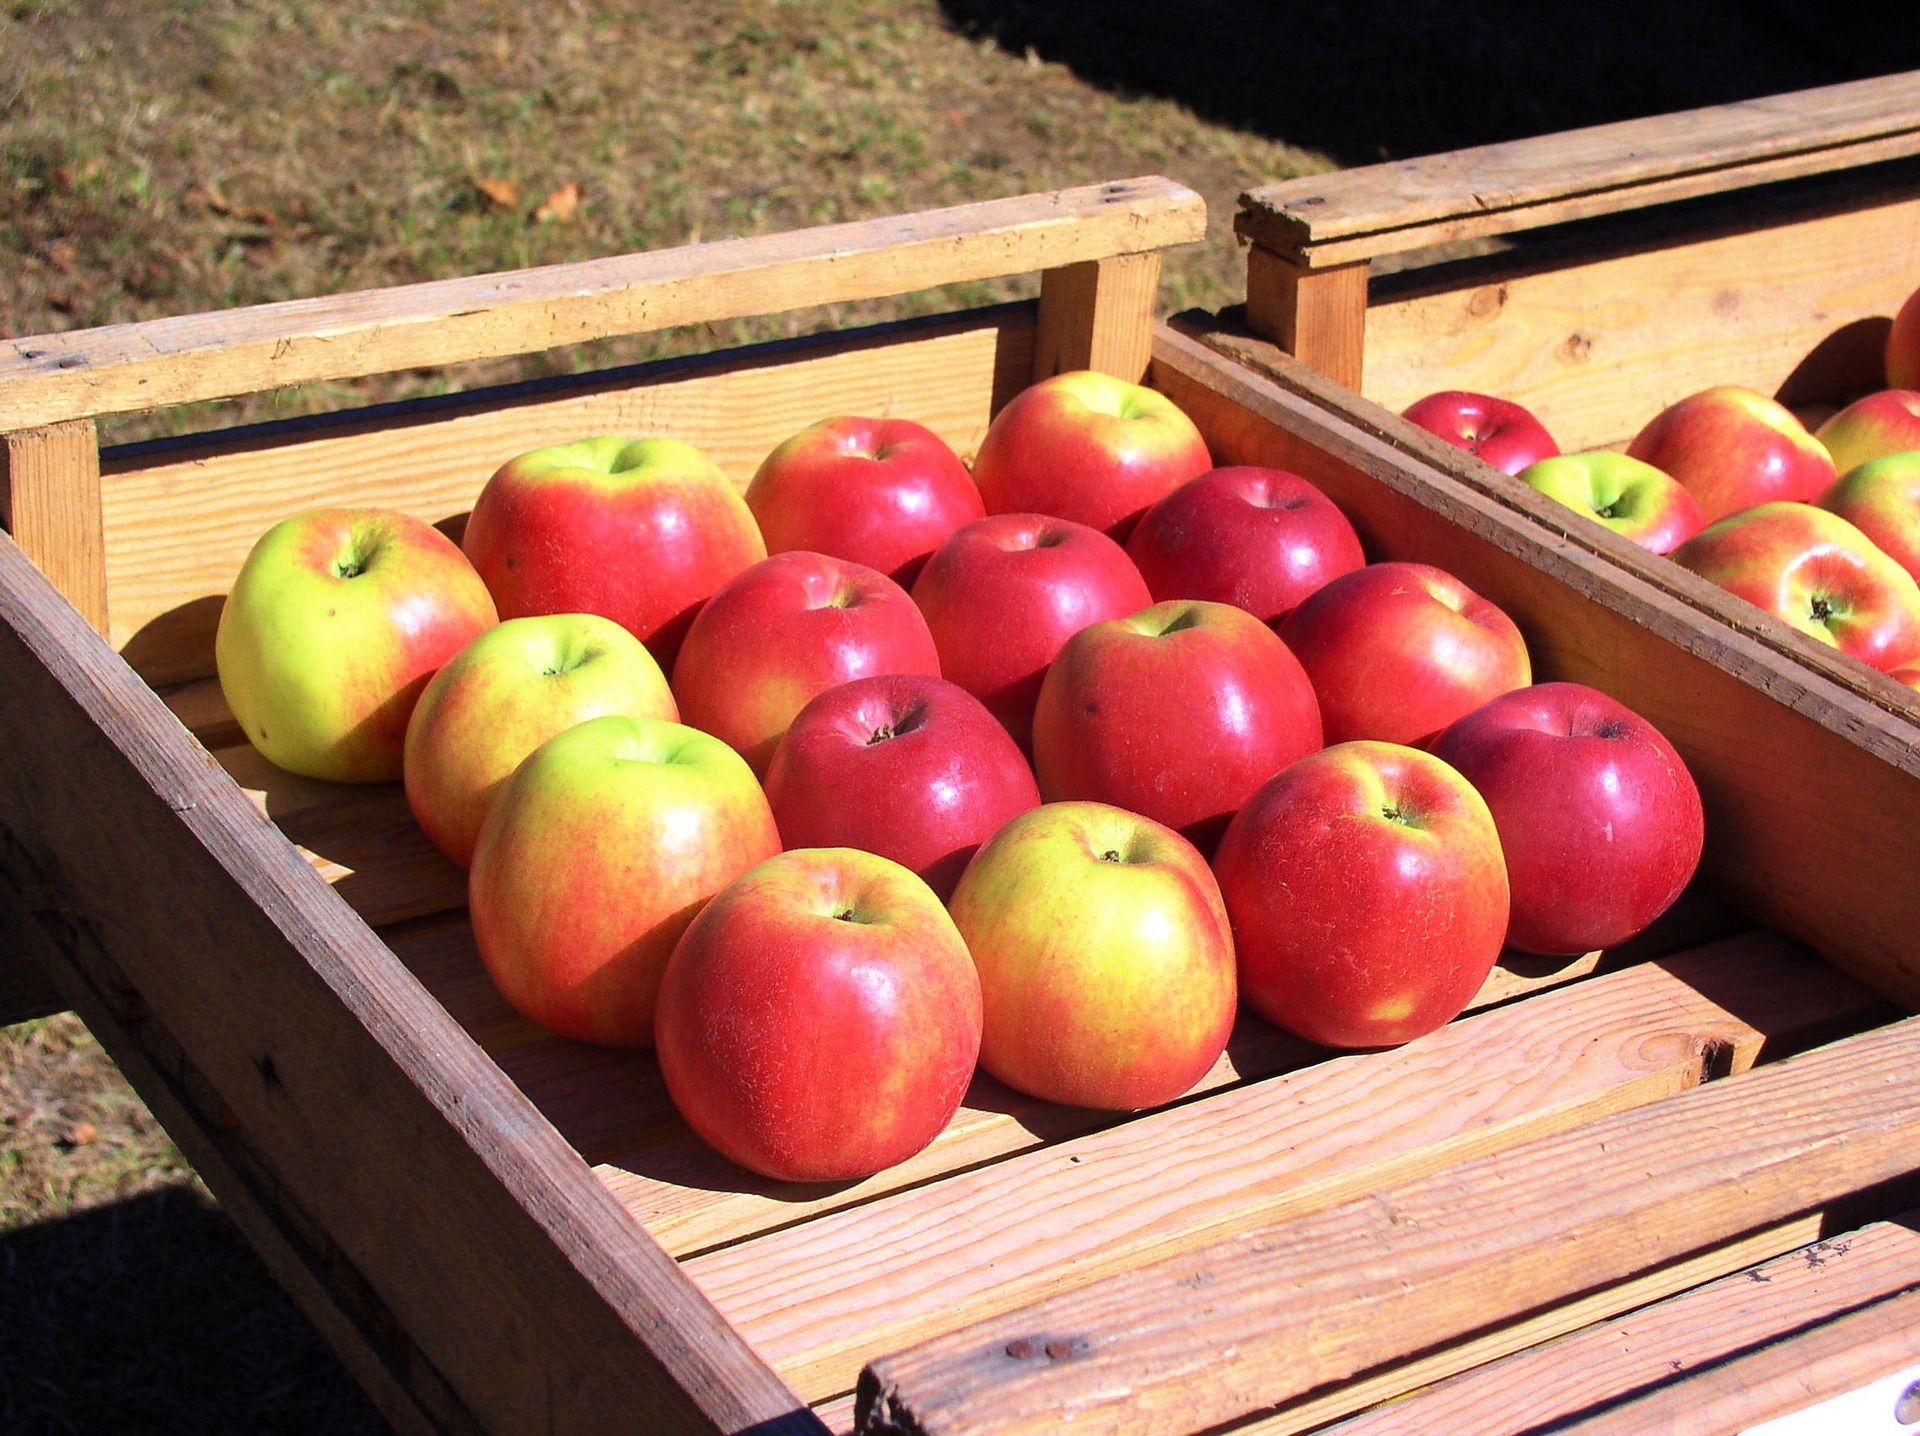 Una caja de manzanas. Las manzanas están organizadas en 4 filas de 4 manzanas cada una.